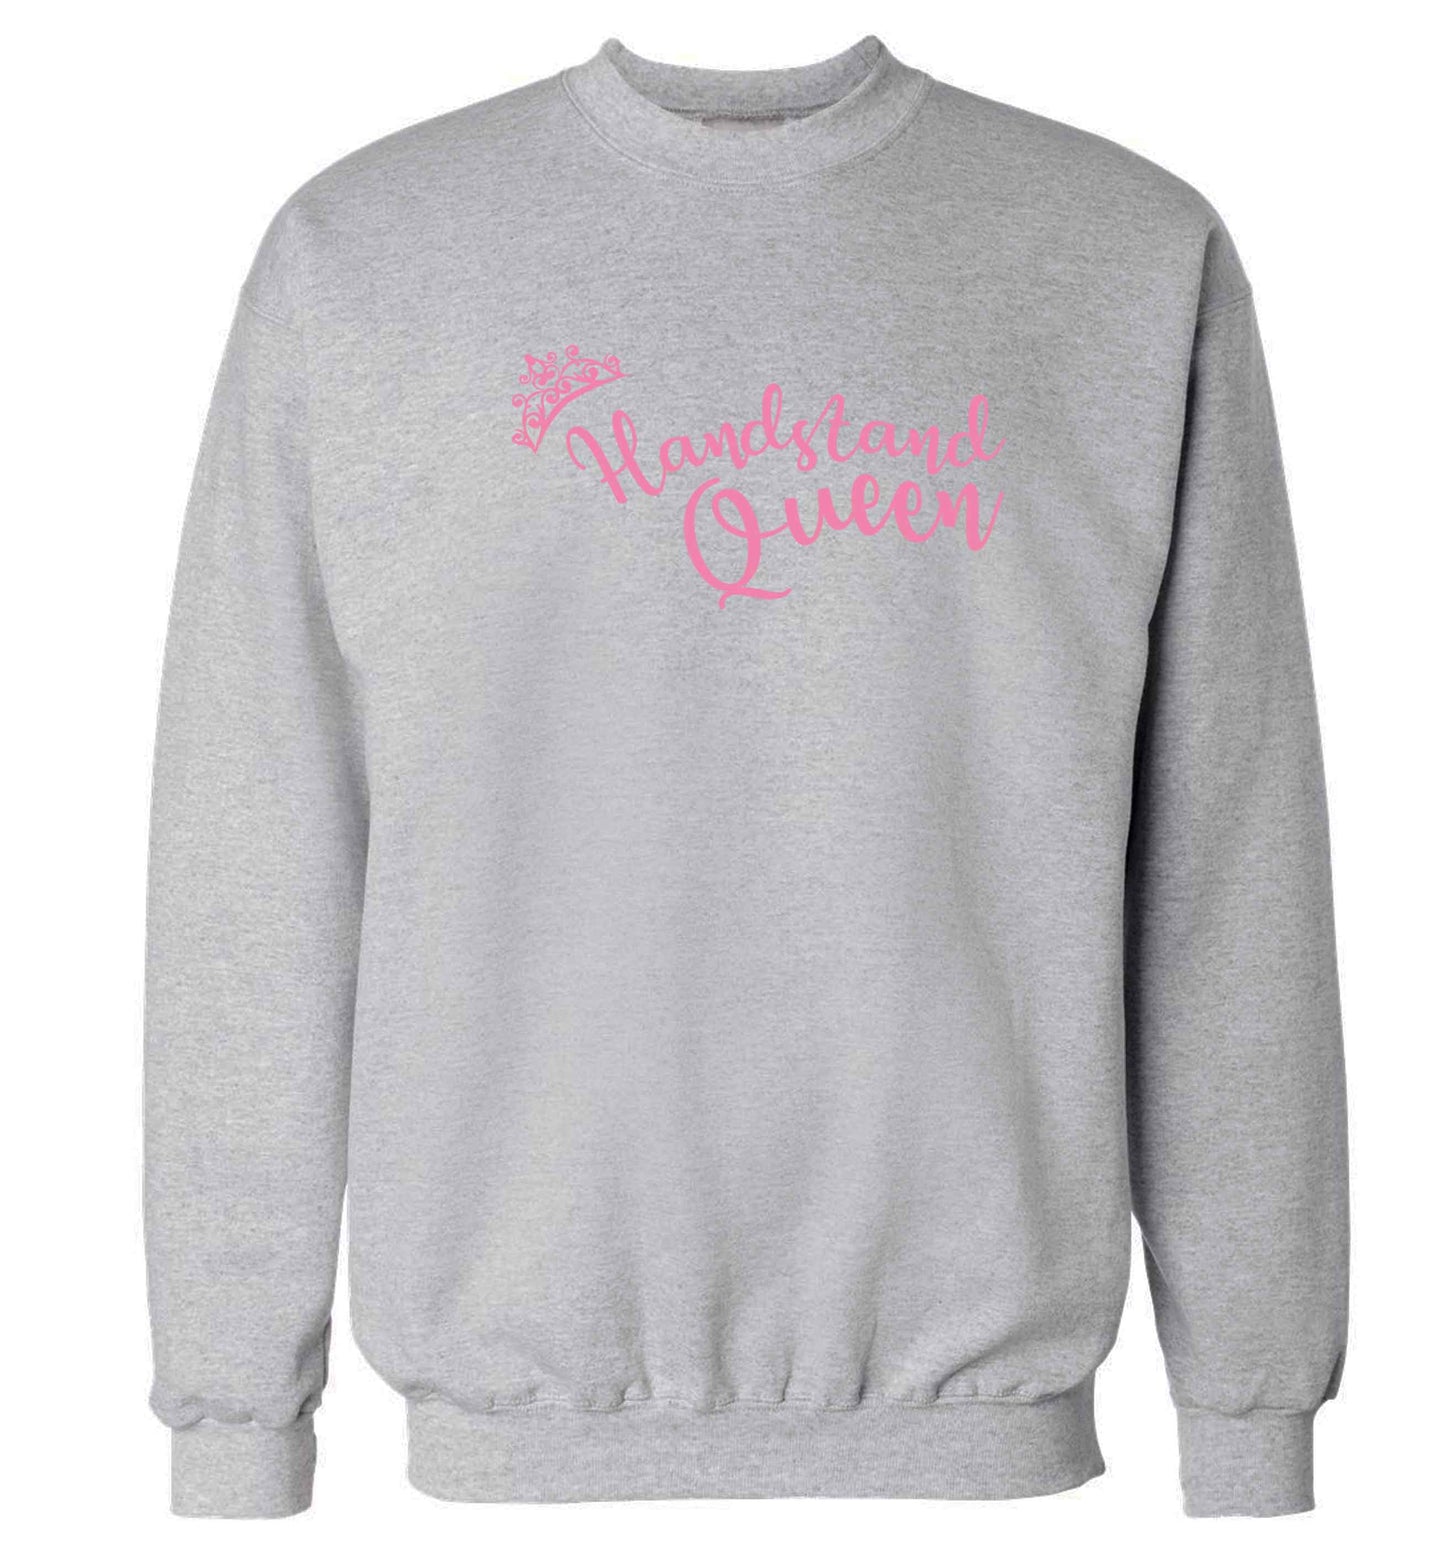 Handstand Queen Adult's unisex grey Sweater 2XL